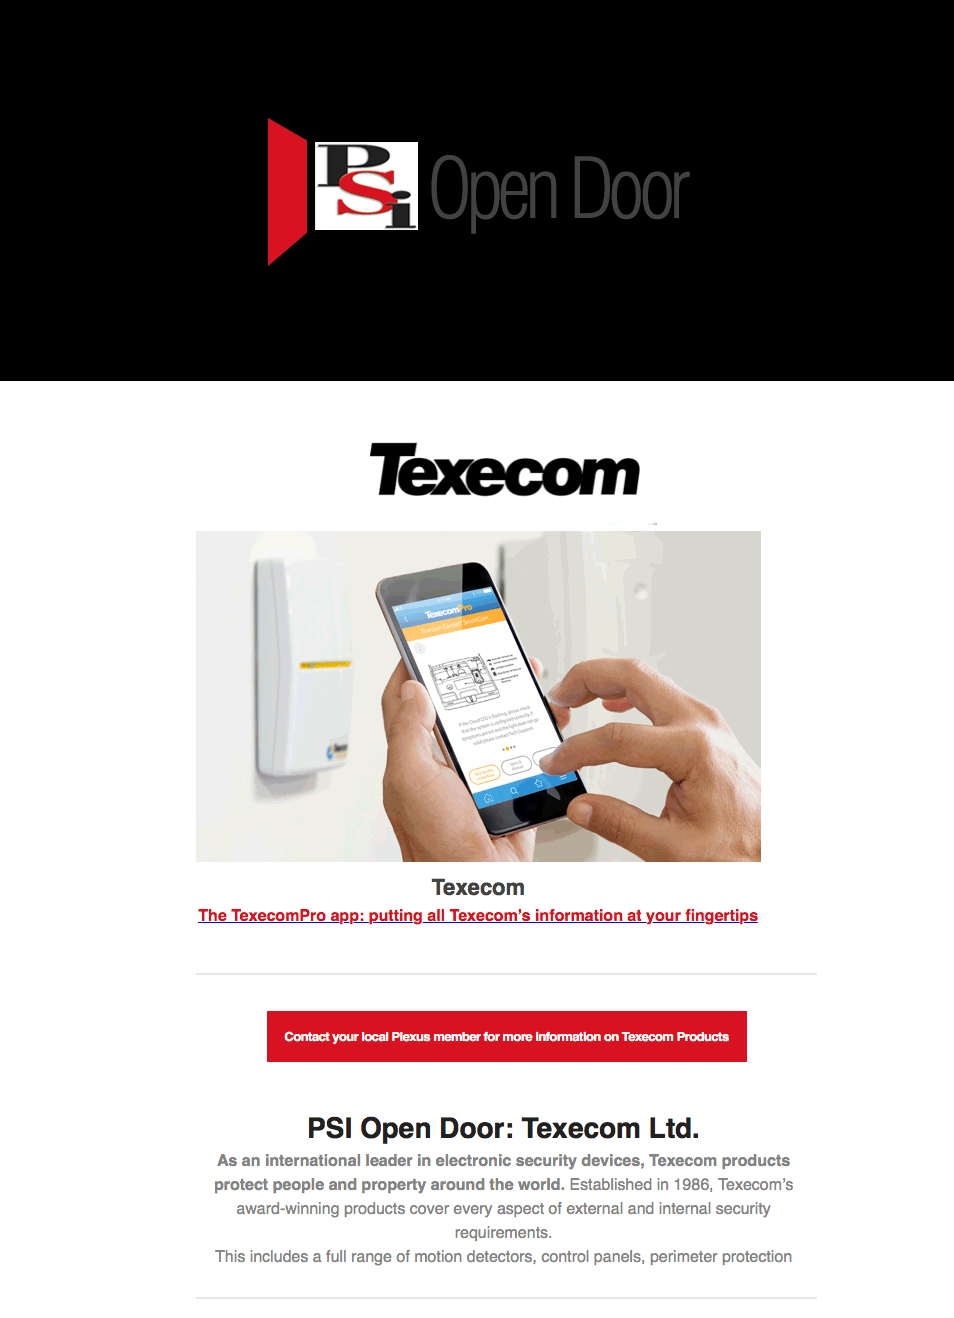 PSI OpenDoor from Texecom